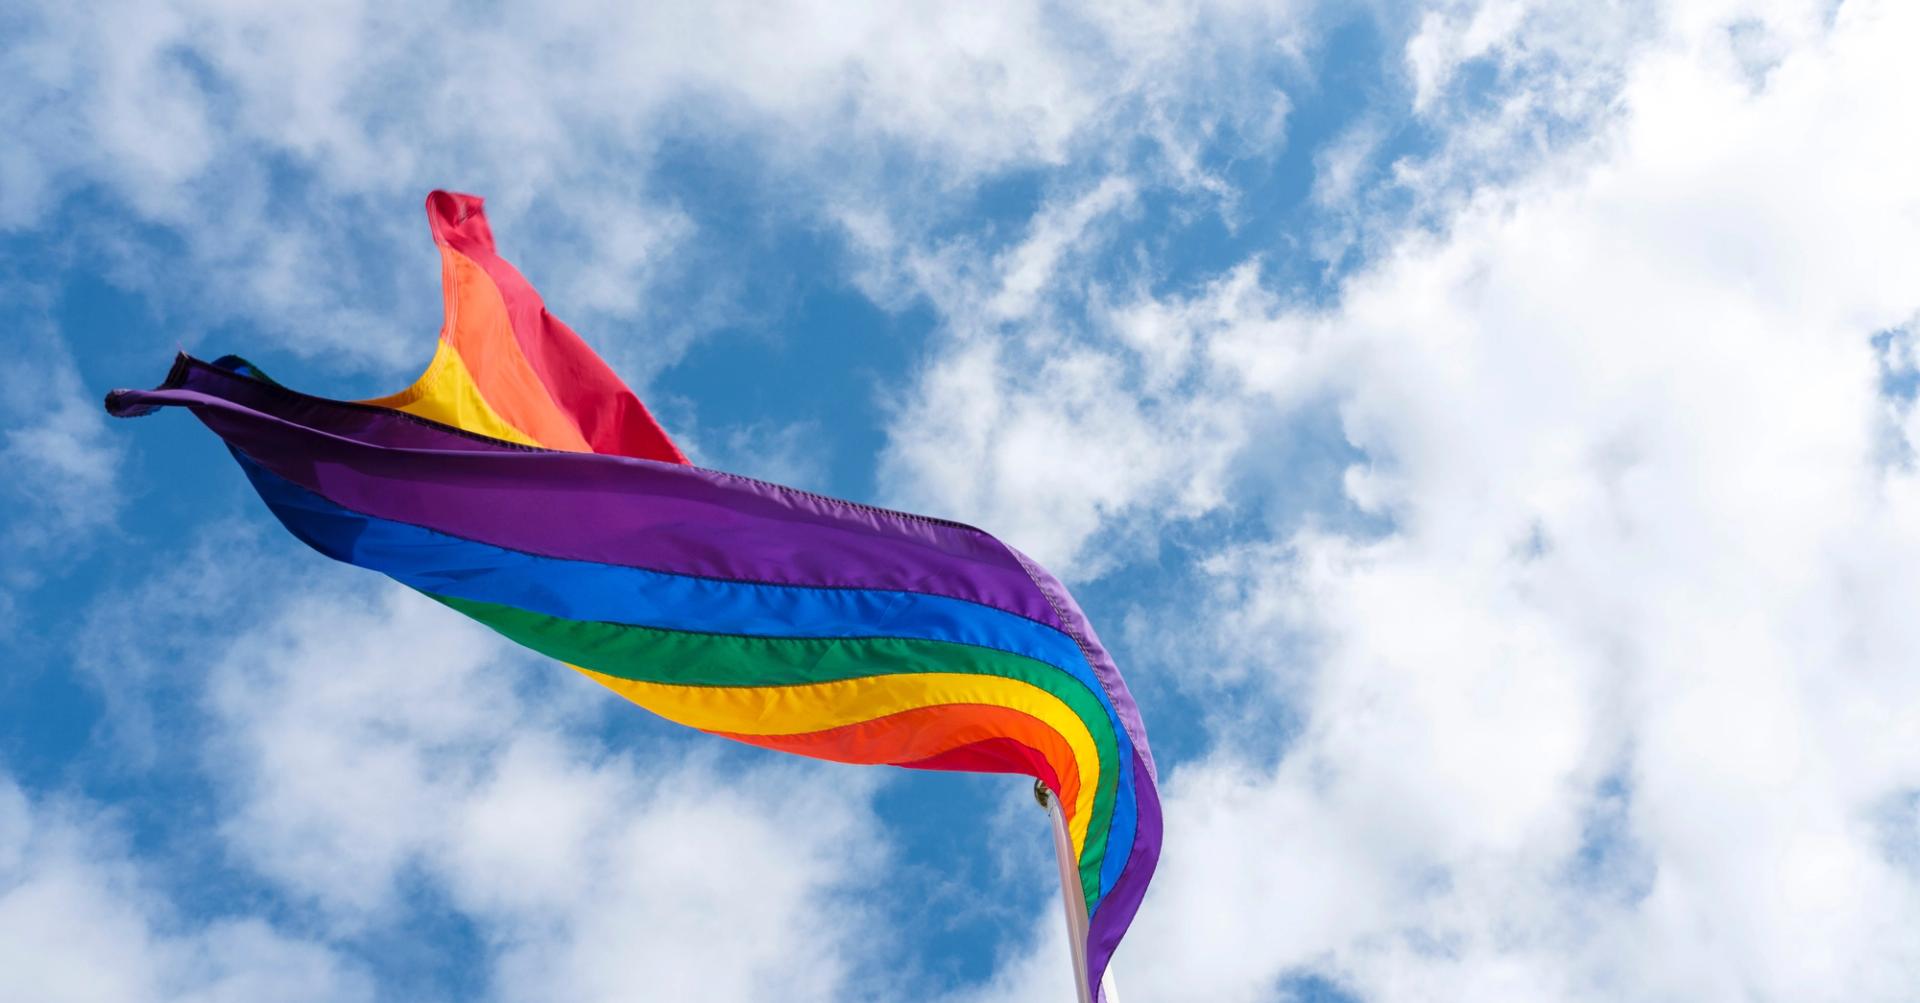  The gay pride flag flies in the Icelandic wind